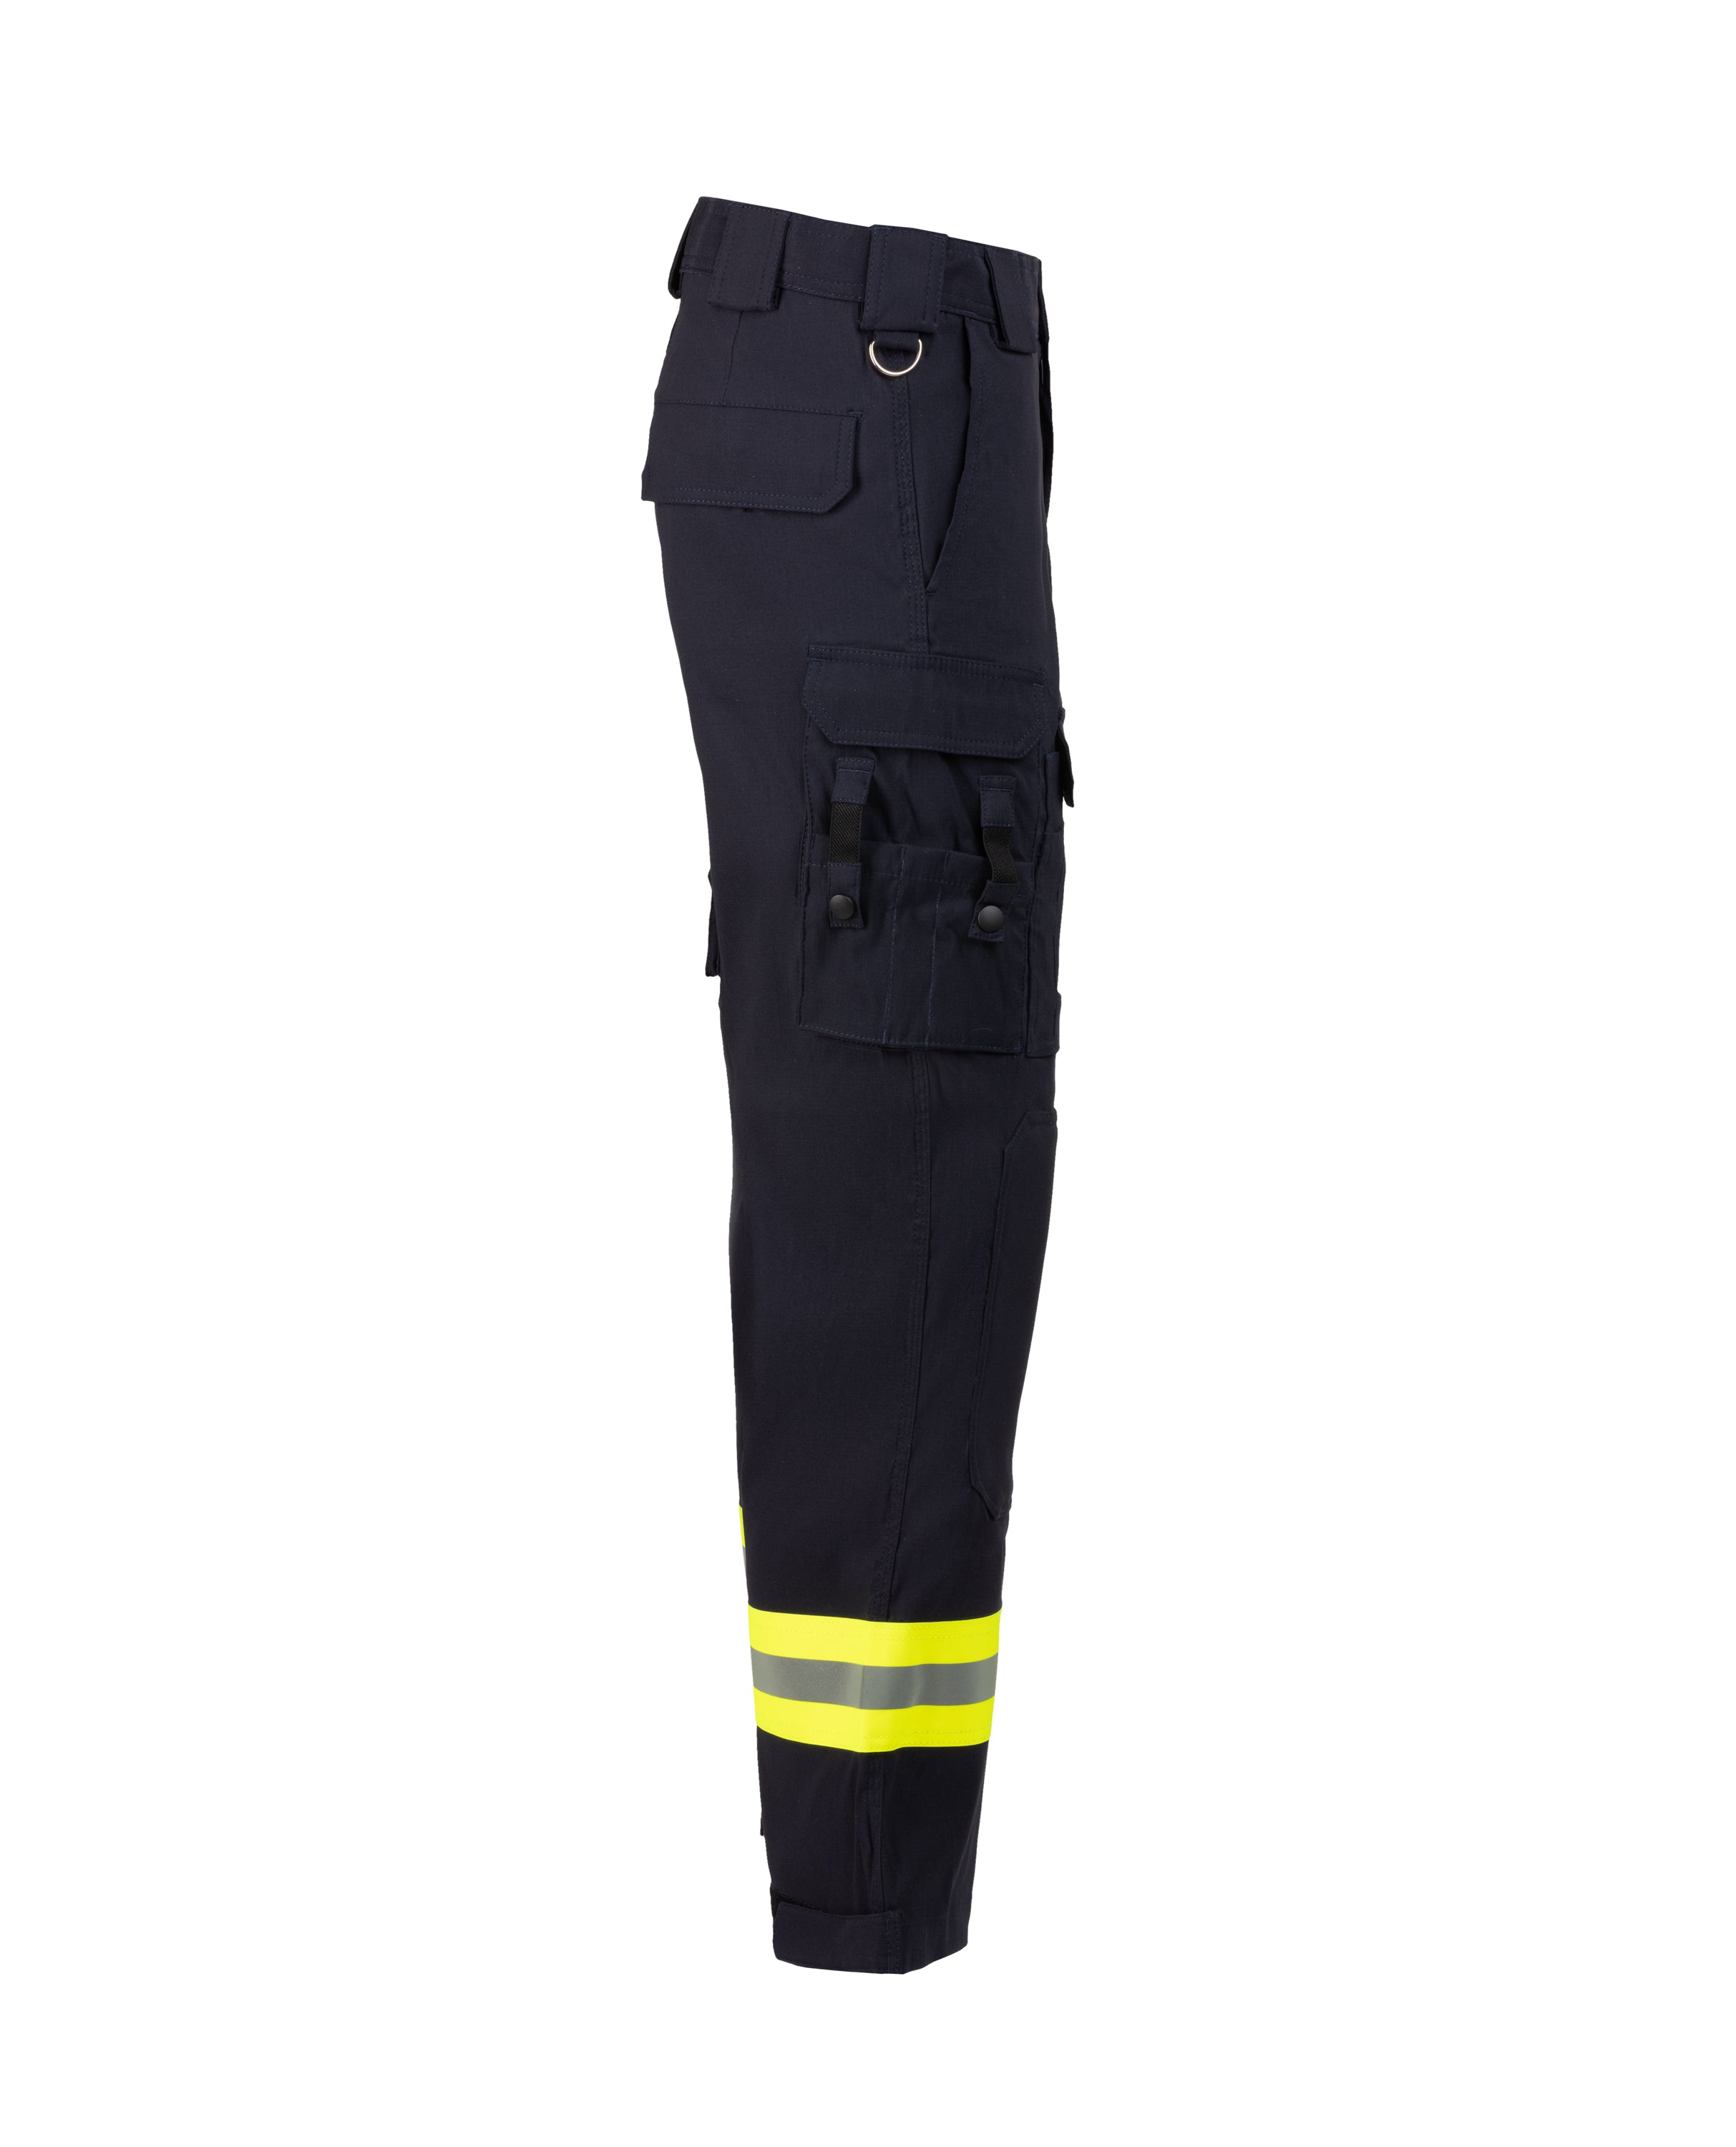 Men's Emergency-Health trousers - 3004022